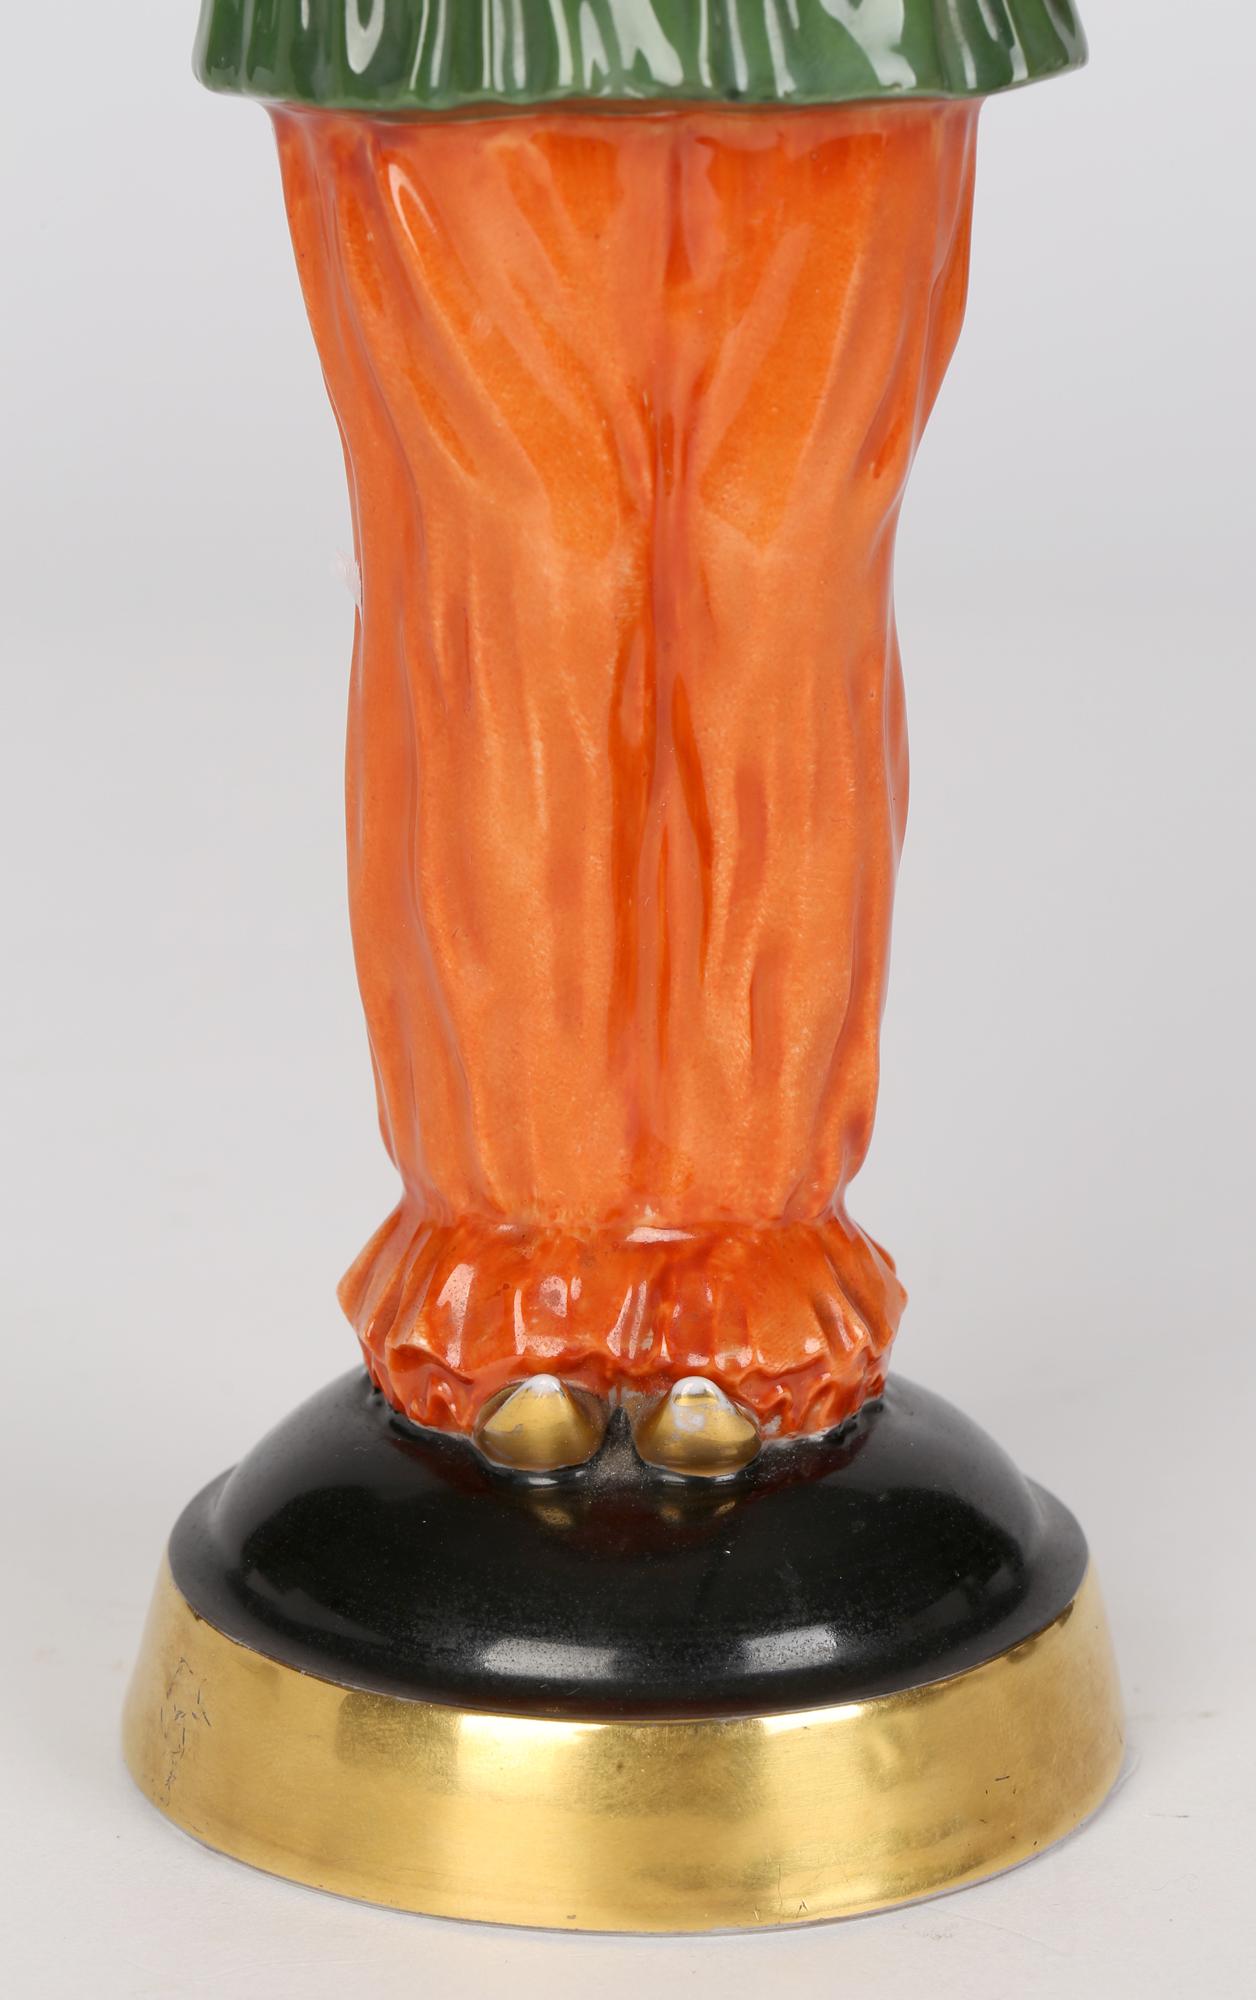 Une rare et étonnante figurine en porcelaine Art Déco Rosenthal intitulée Pierrette, conçue par la célèbre sculptrice Dorothea Charol (allemande, 1889-1963), datant d'environ 1926. Cette grande et exquise figurine sculptée repose sur un piédestal